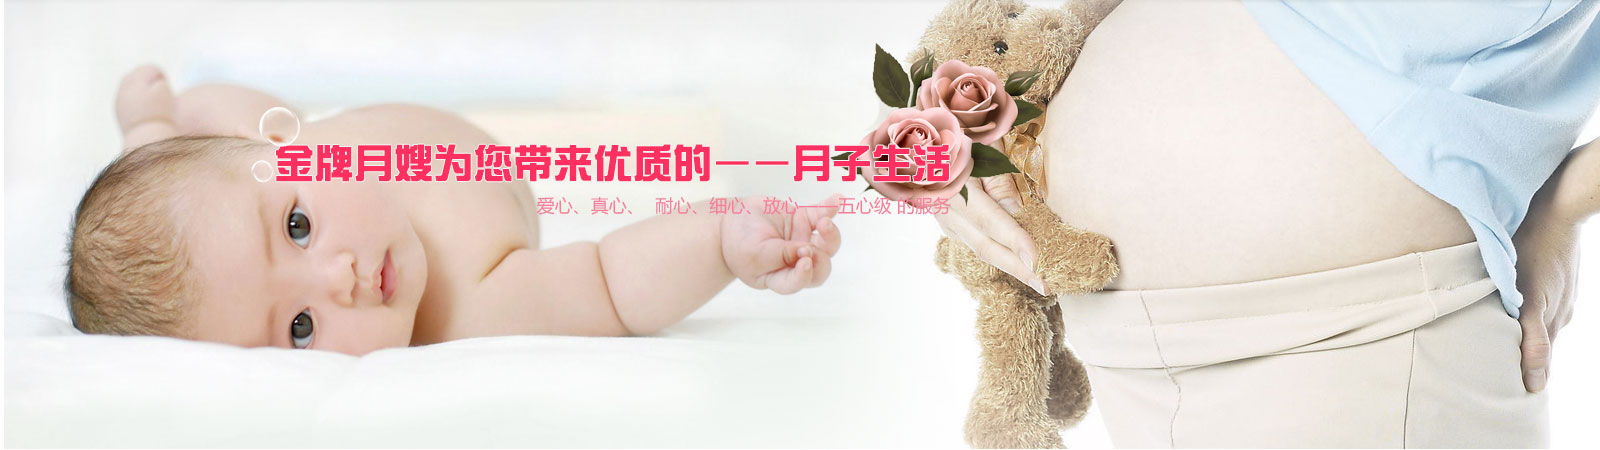 乌鲁木齐月嫂公司浅谈宝宝反复发烧或是暑热症的特征